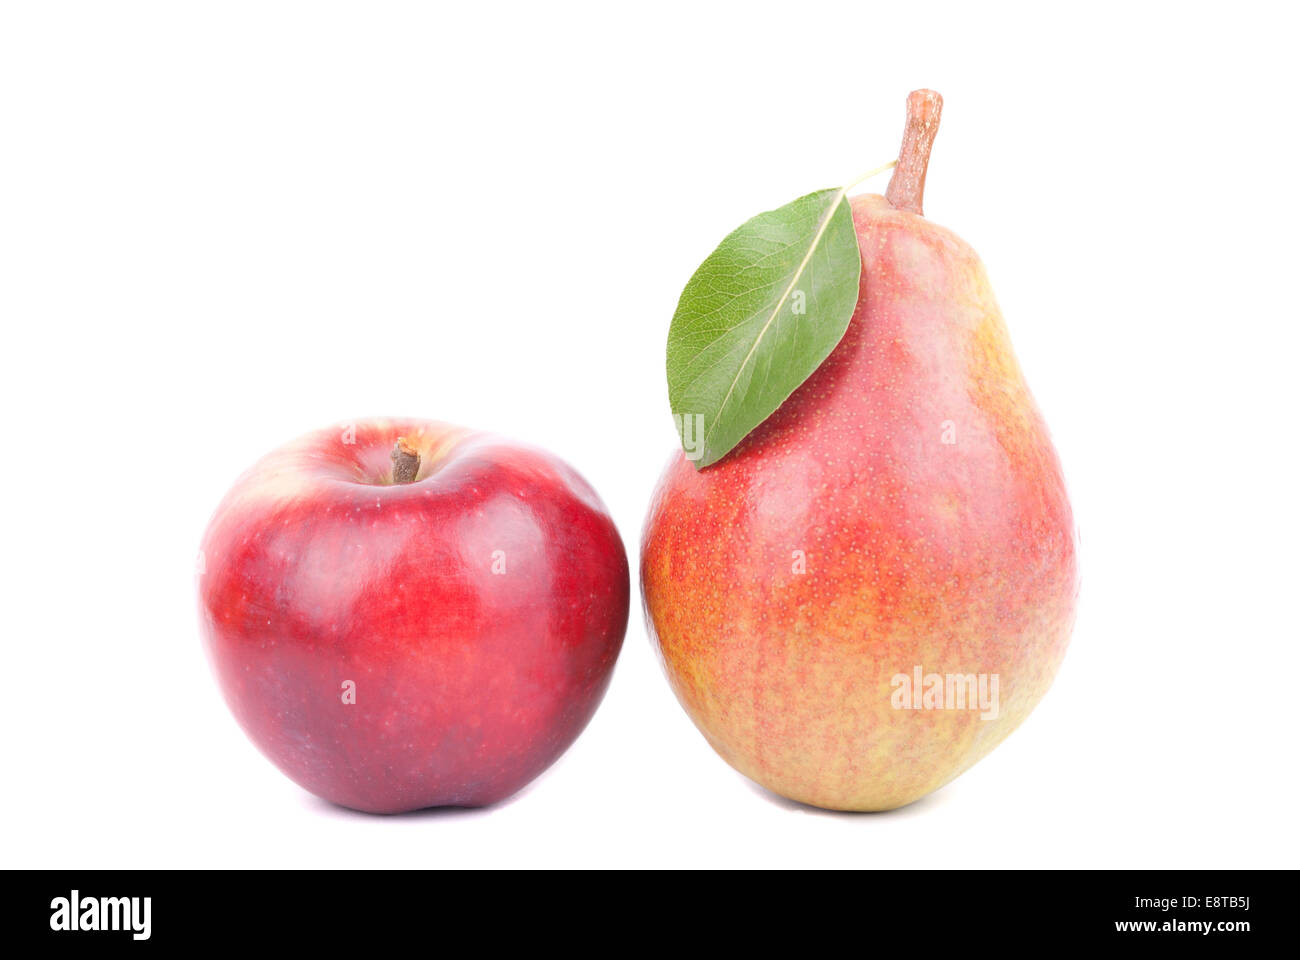 Apfel und Birne auf einem weißen Hintergrund. Stockfoto